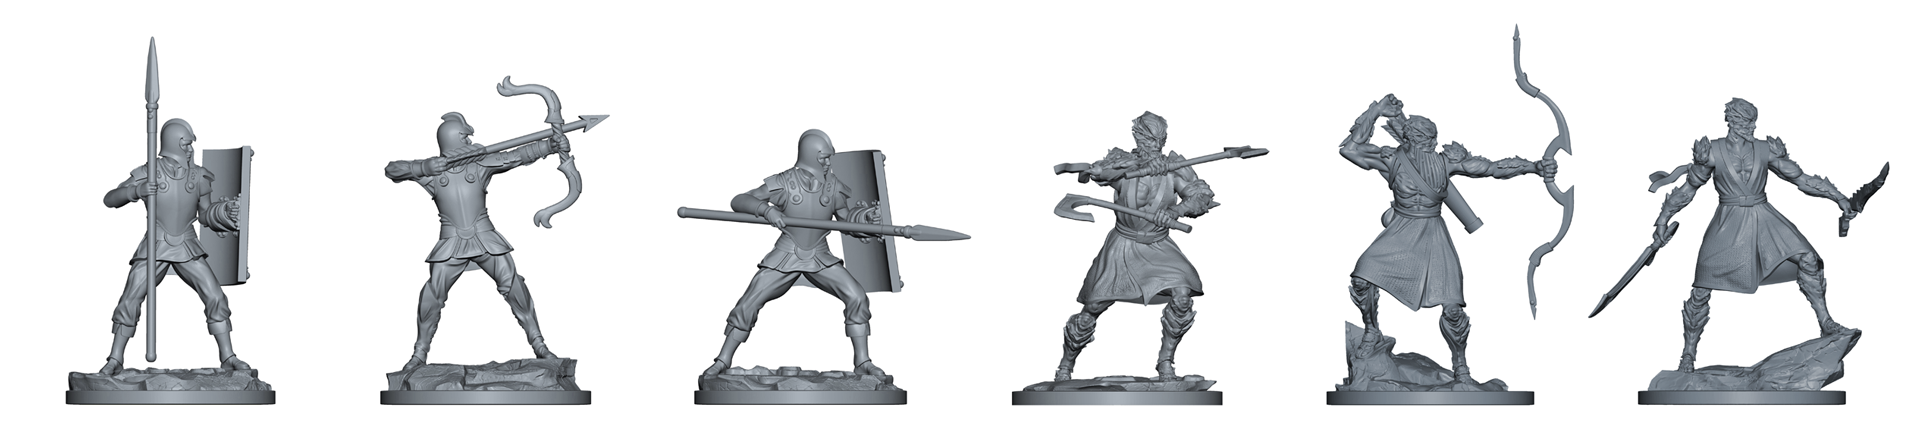 Stormlight Premium Miniatures - Nuevas poses para el conjunto de ejército genérico Kholin y parshendi